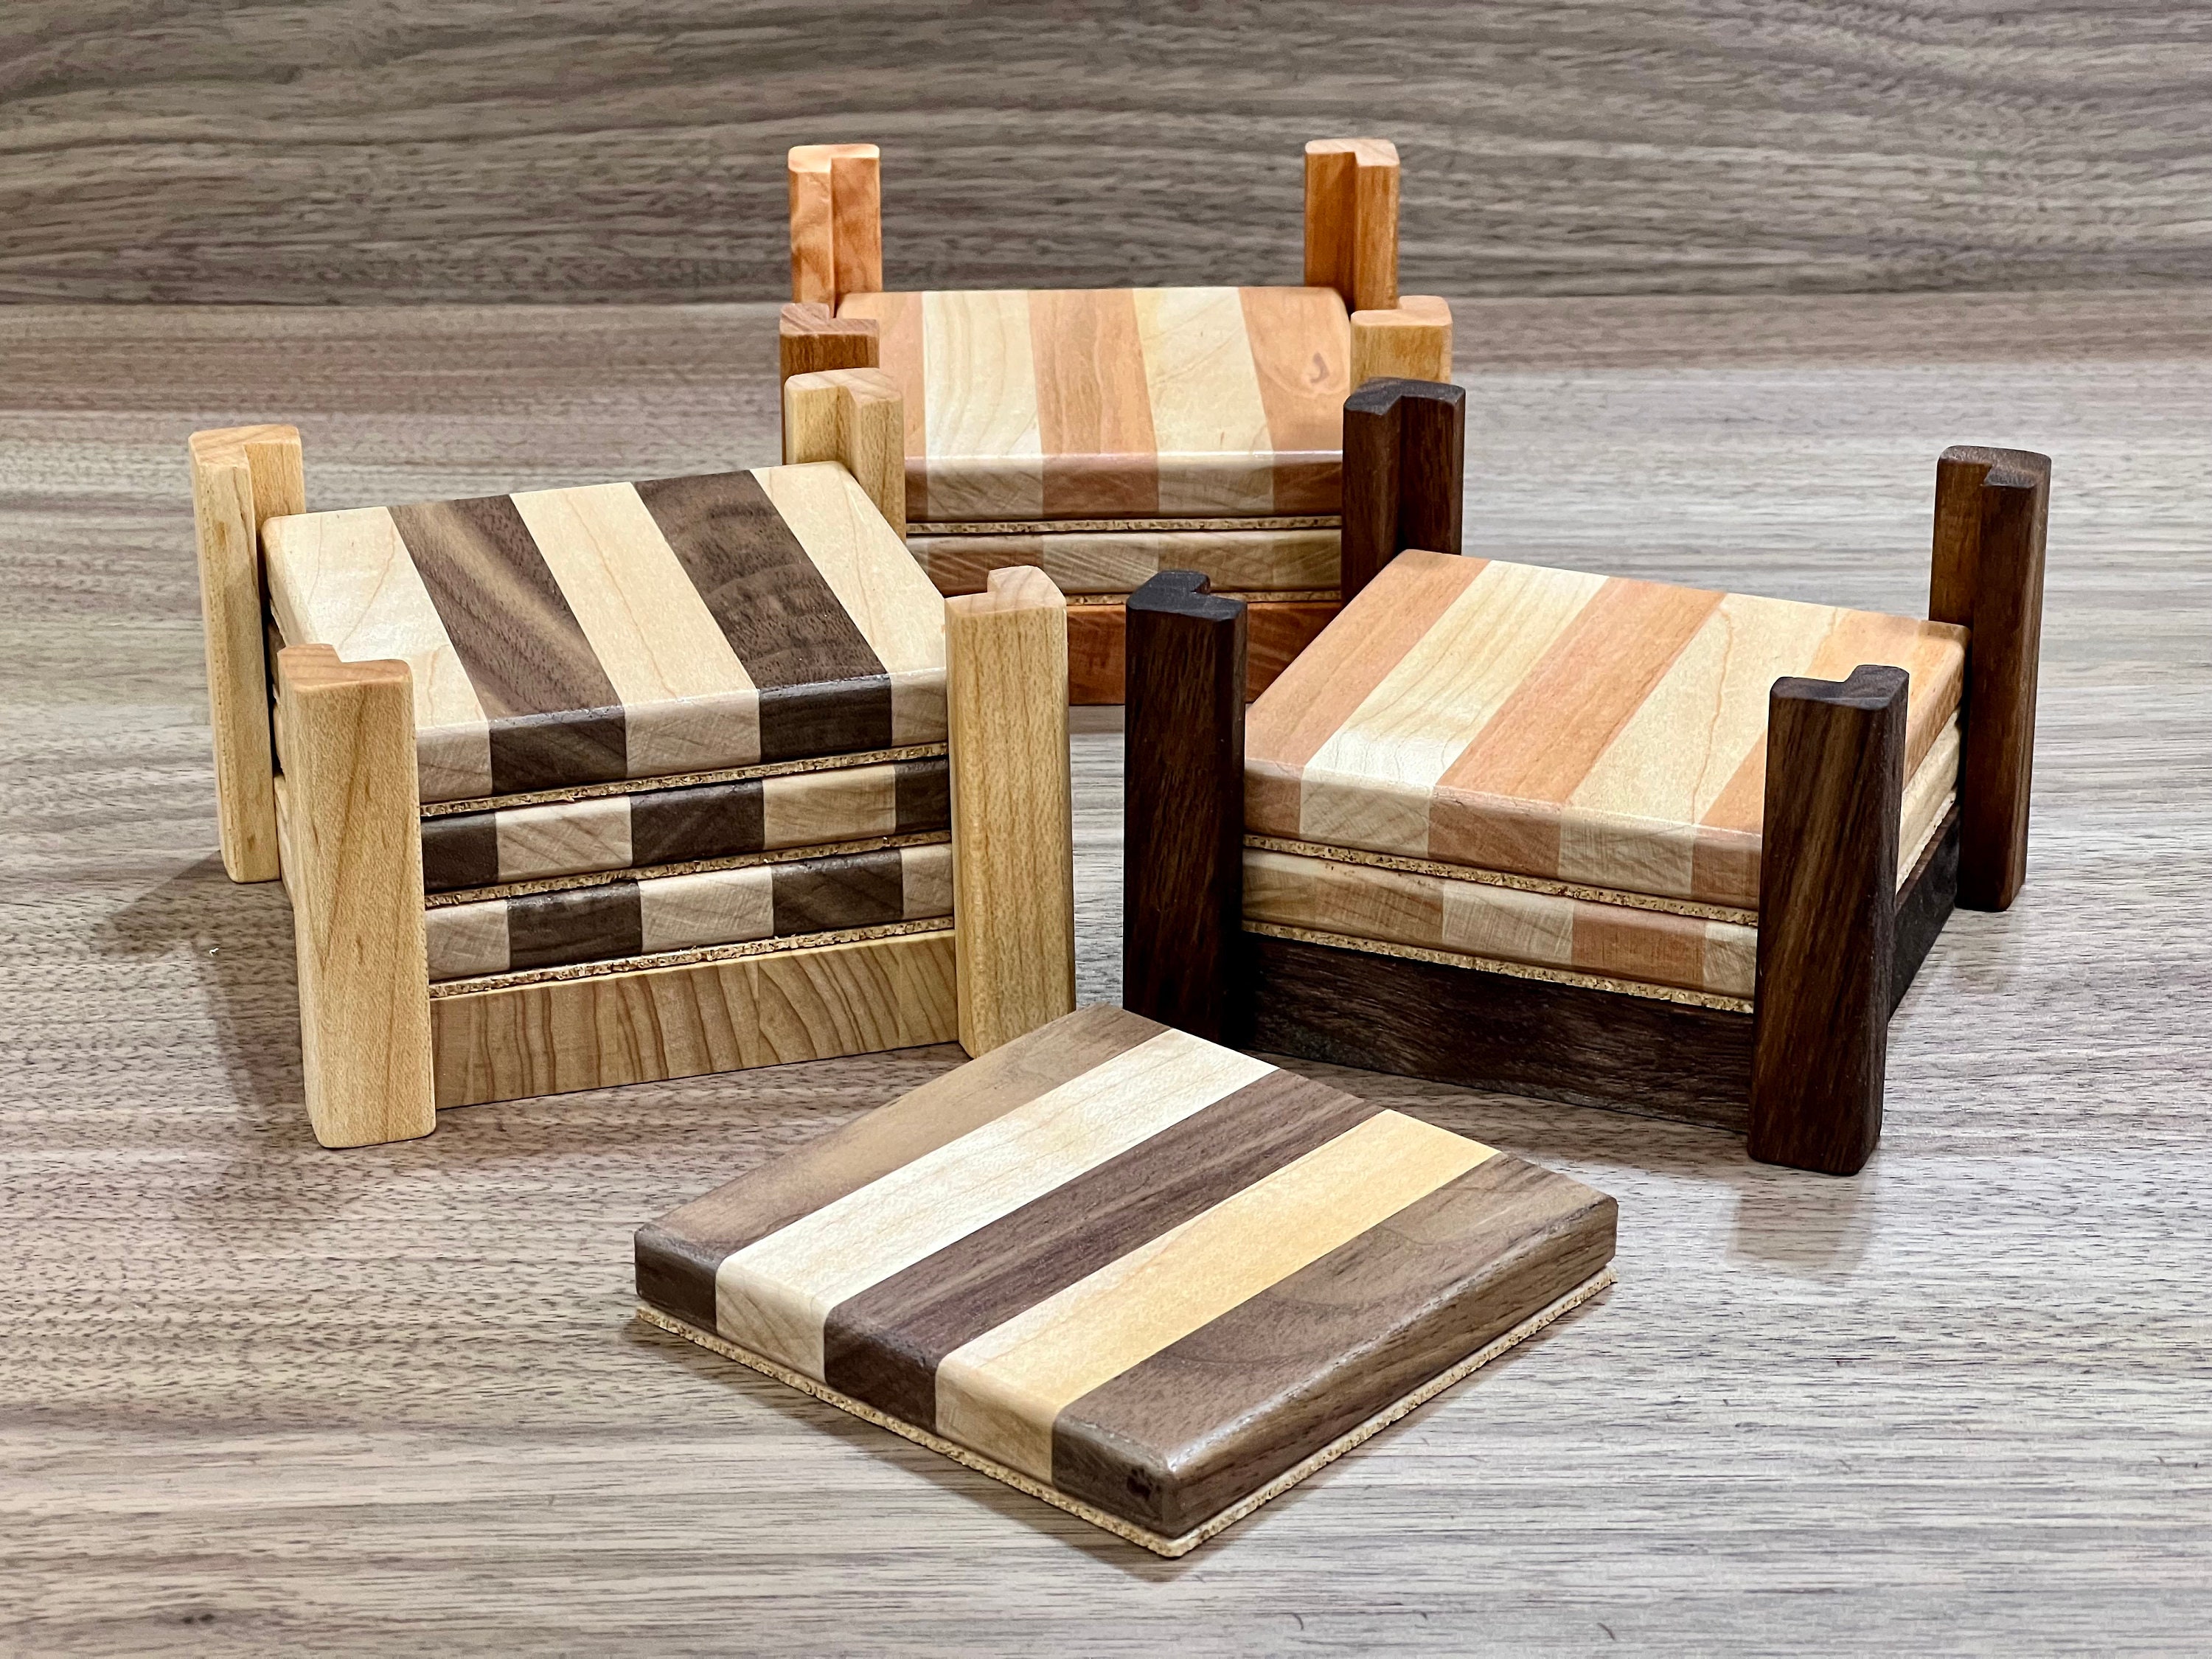 Cedar Wood Coaster – Thread and Maple